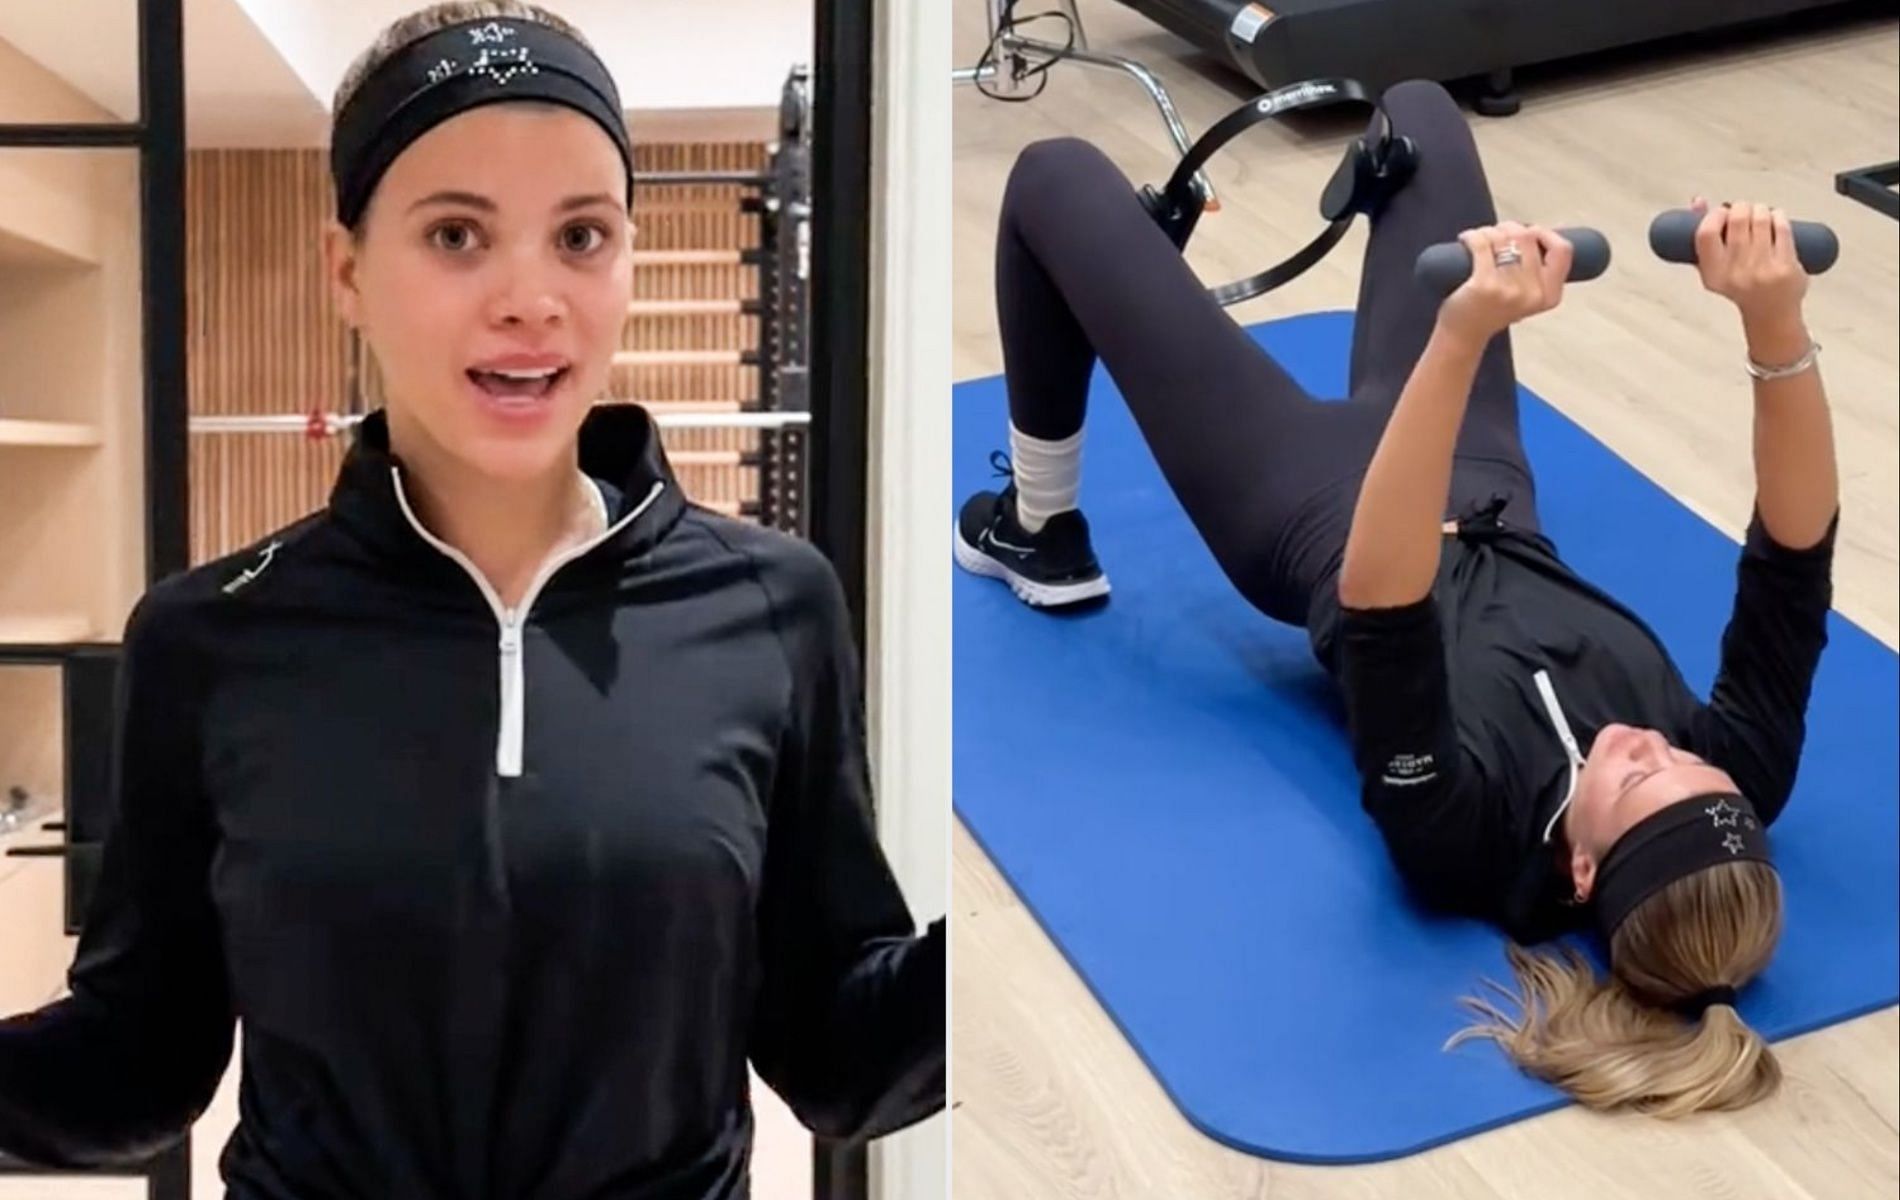 Sofia Richie&#039;s 15-minute workout routine on TikTok (Image via People)